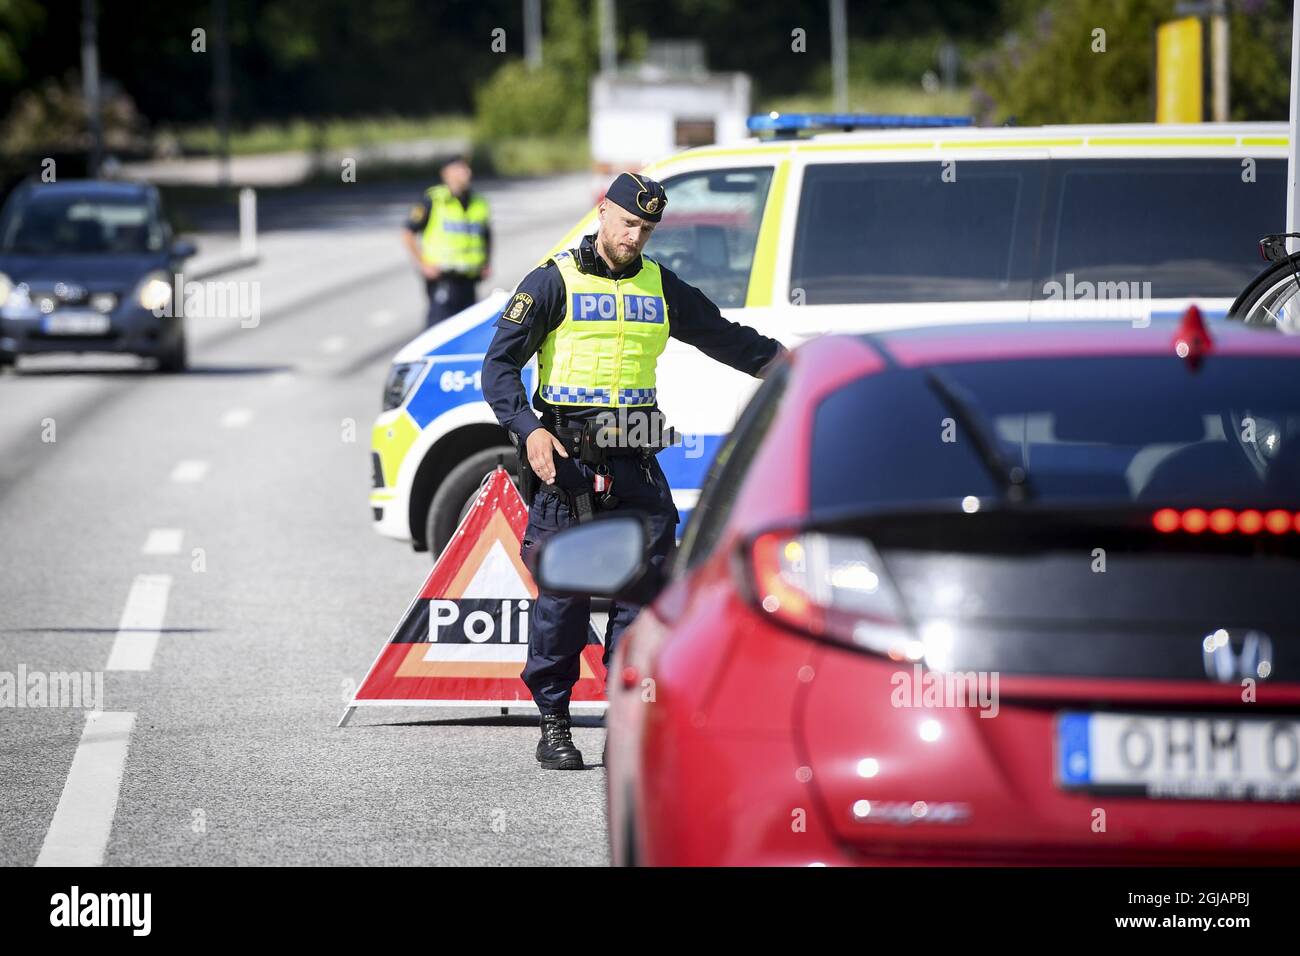 NORJE 20170607 Oficiales de la policía armada en el primer día del 'Festival de Rock de Suecia' en Norje Suecia el miércoles. Debido a los recientes ataques terroristas la seguridad es más estricta este año Foto: Fredrik Sandberg / TT / KOD 10080 swedenrock2017 Foto de stock